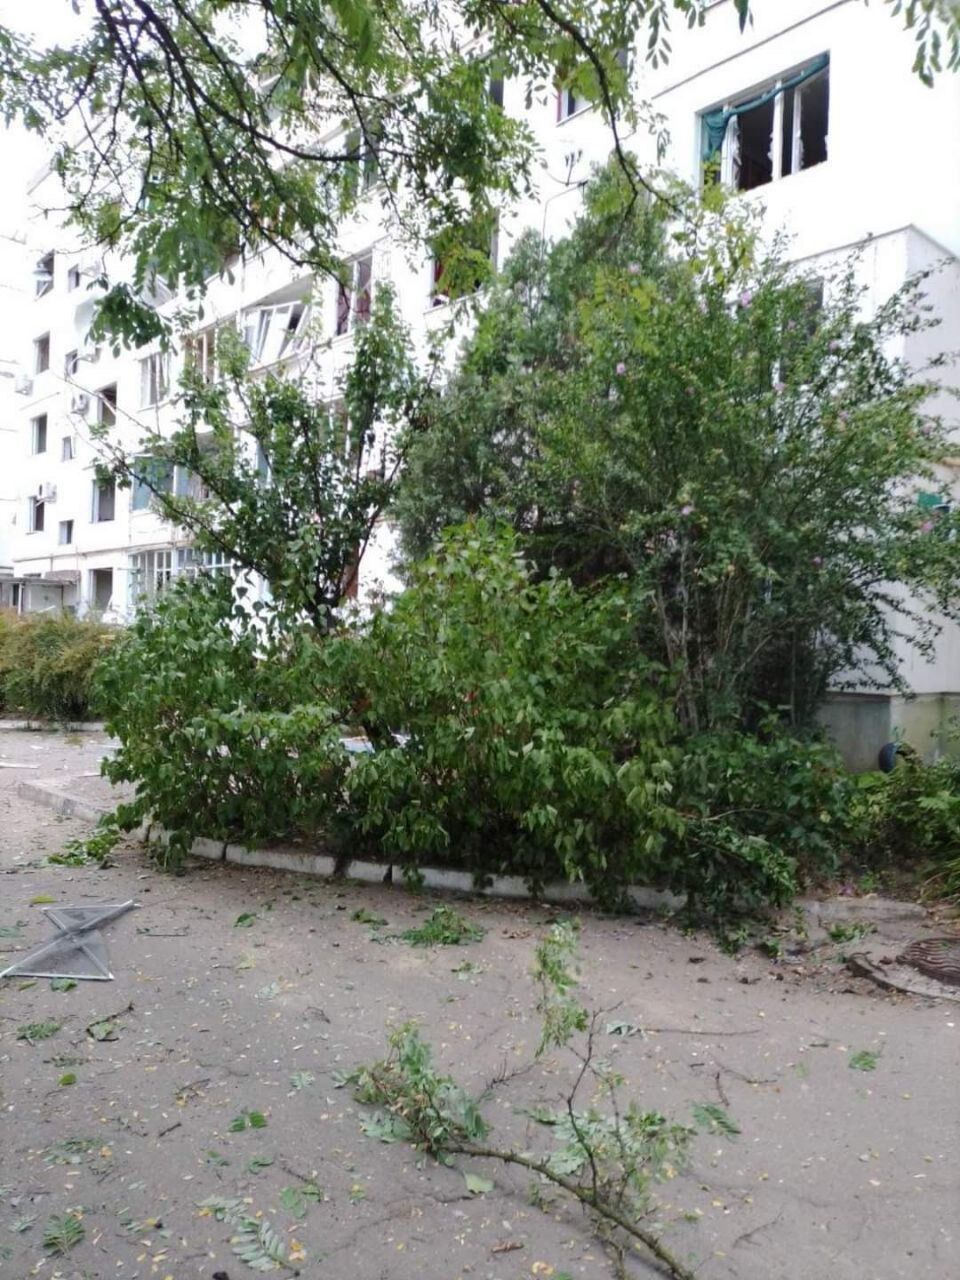 Оккупанты нанесли удар авиабомбами по домам в Новой Каховке: есть погибшие и раненые. Фото и видео